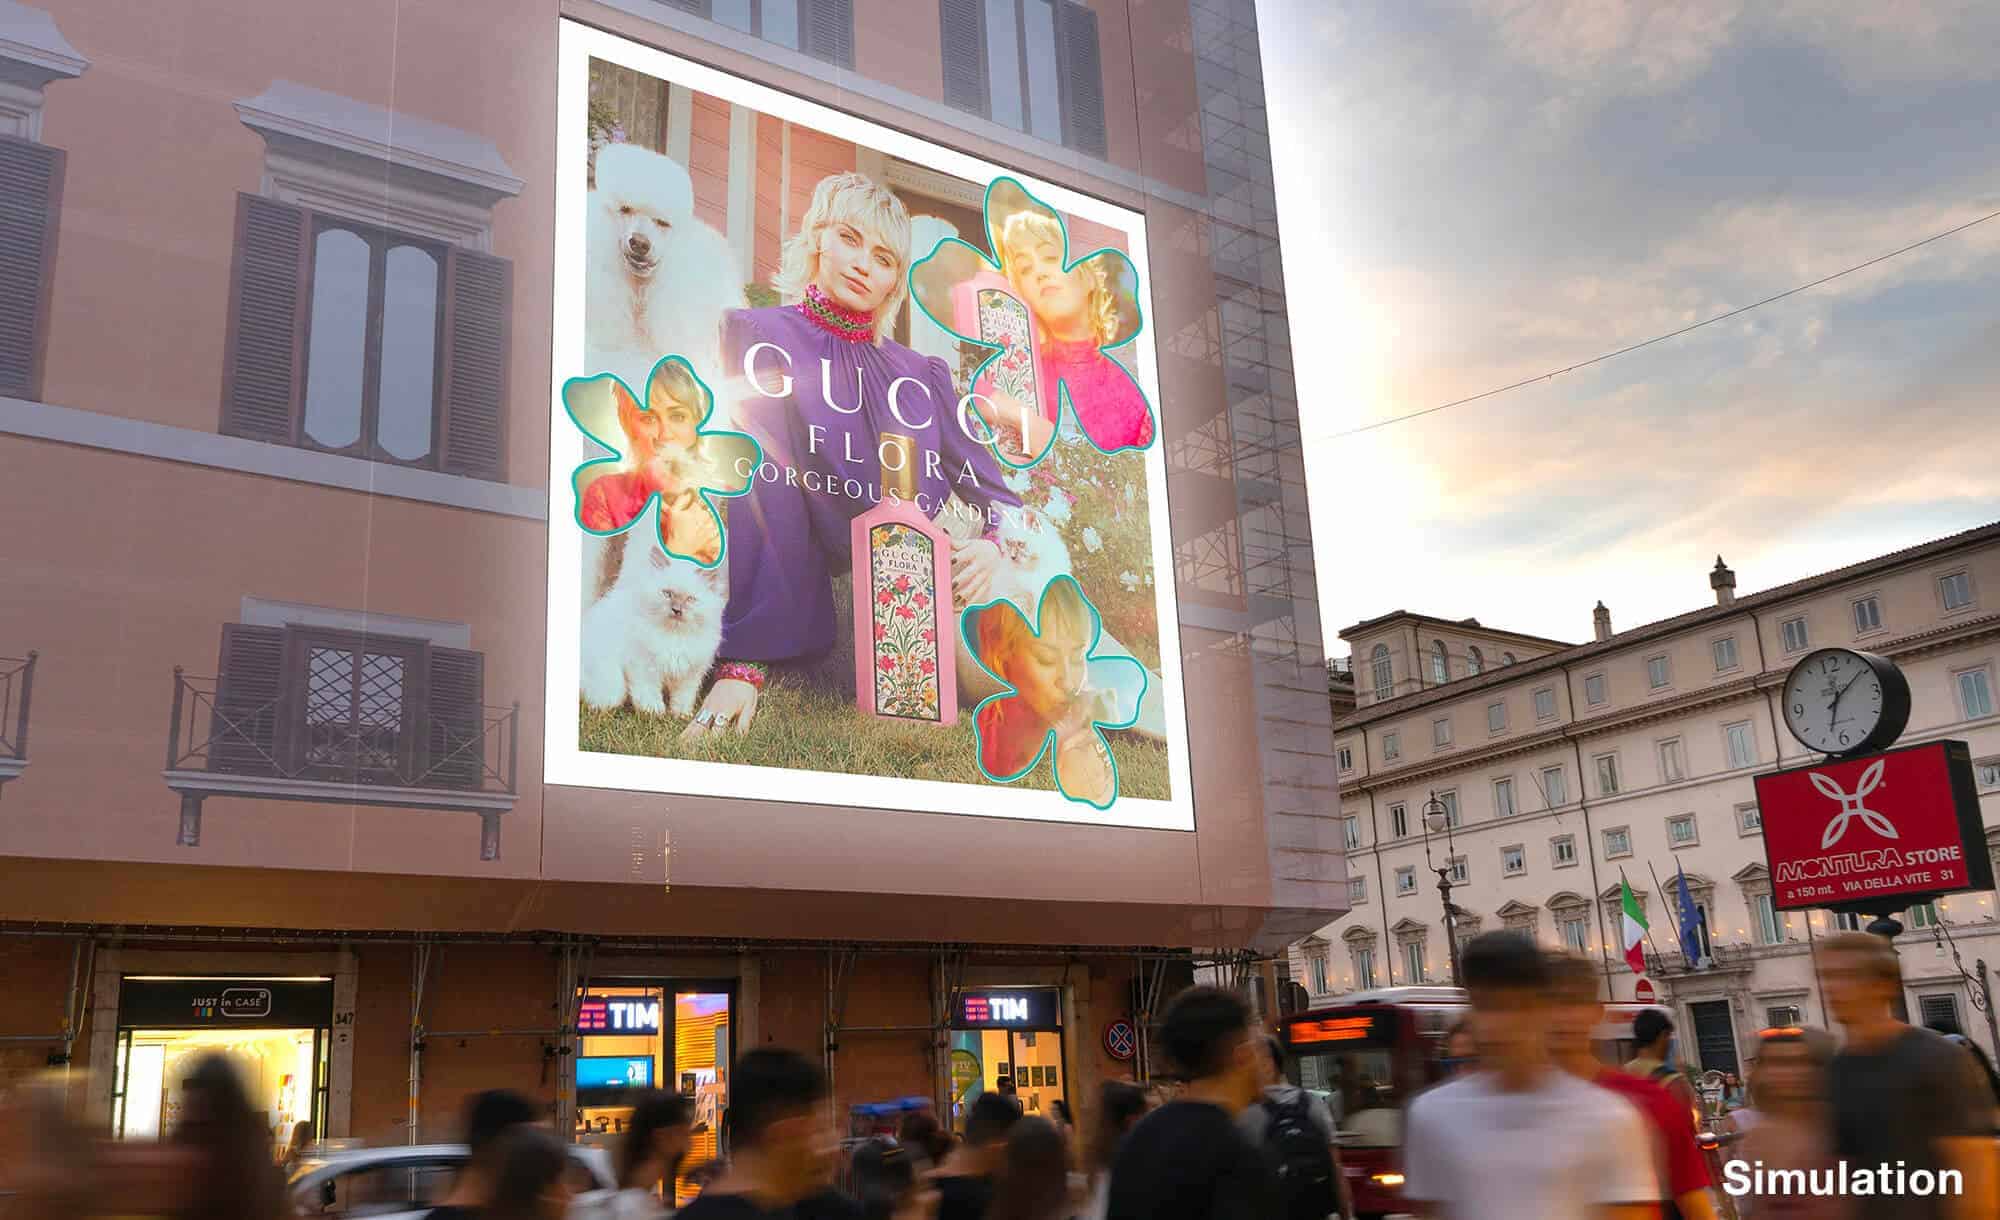 Maxi Affissione a Roma in Piazza Colonna con Gucci (Fashion)